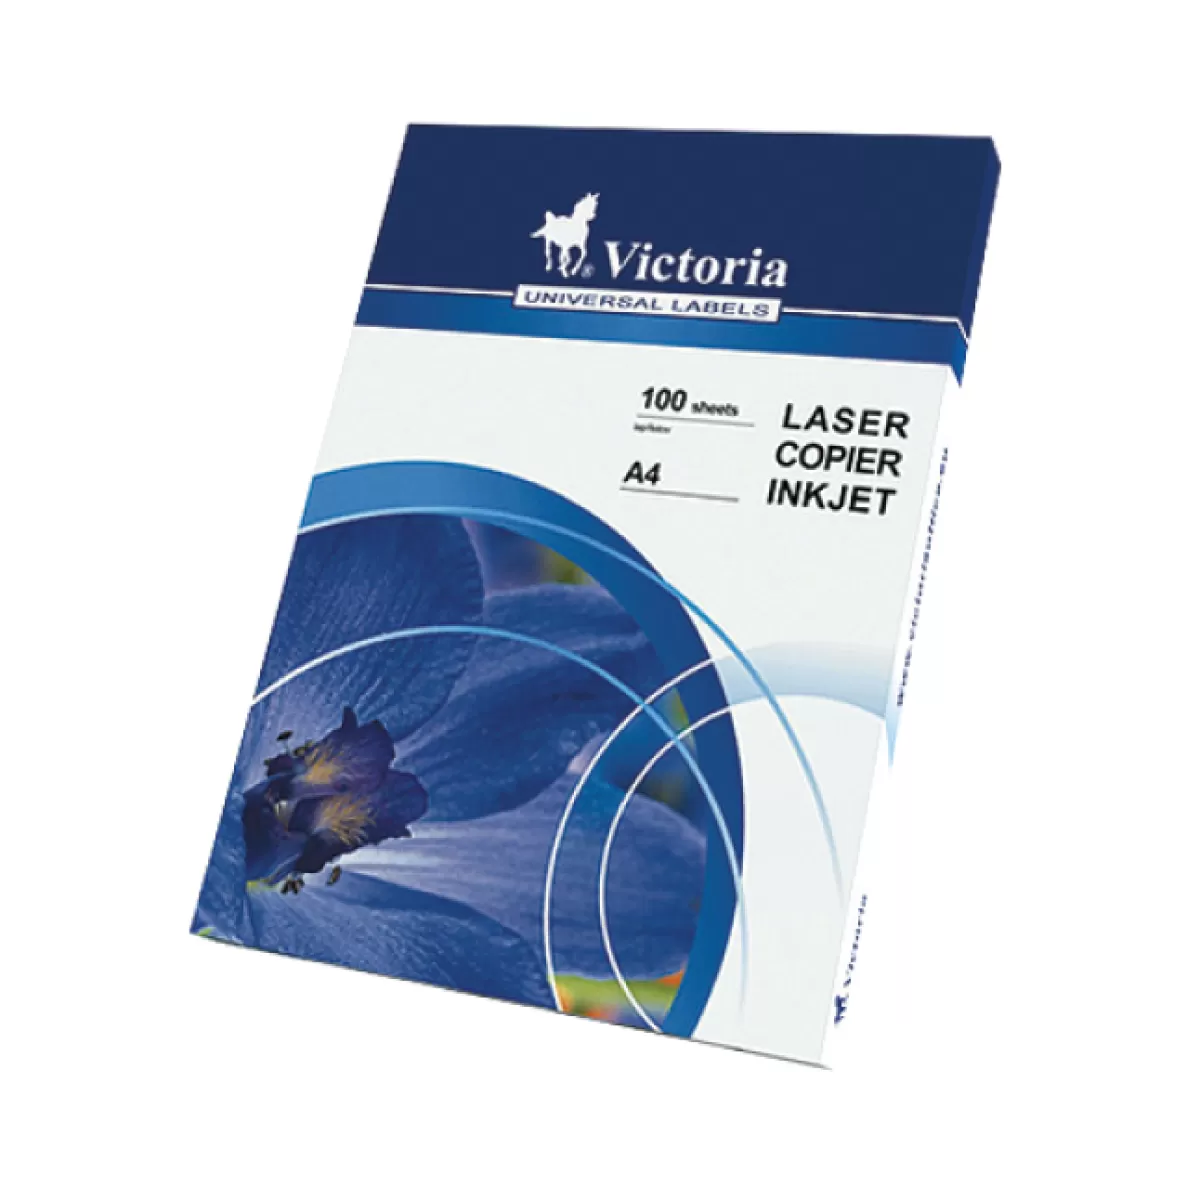 Етикети Victoria 63.5x46.6 mm, 100 л. 18 етик.